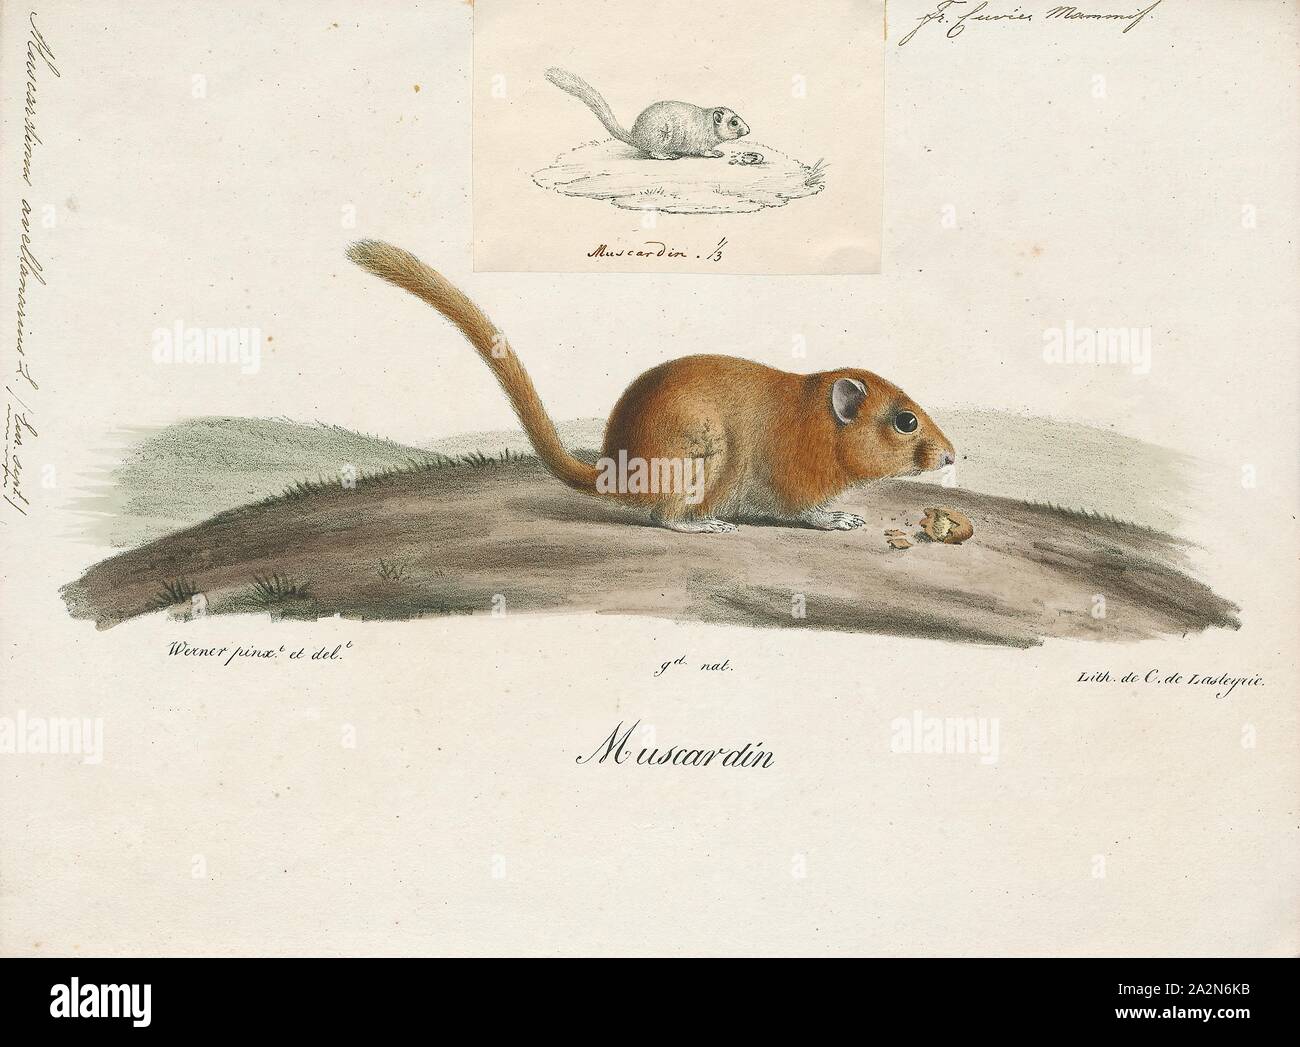 Muscardinus avellanarius, Imprimer, le noisetier commun ou dormeuse dormeuse (Muscardinus avellanarius) est un petit mammifère et la seule espèce vivante du genre Muscardinus., 1700-1880 Banque D'Images